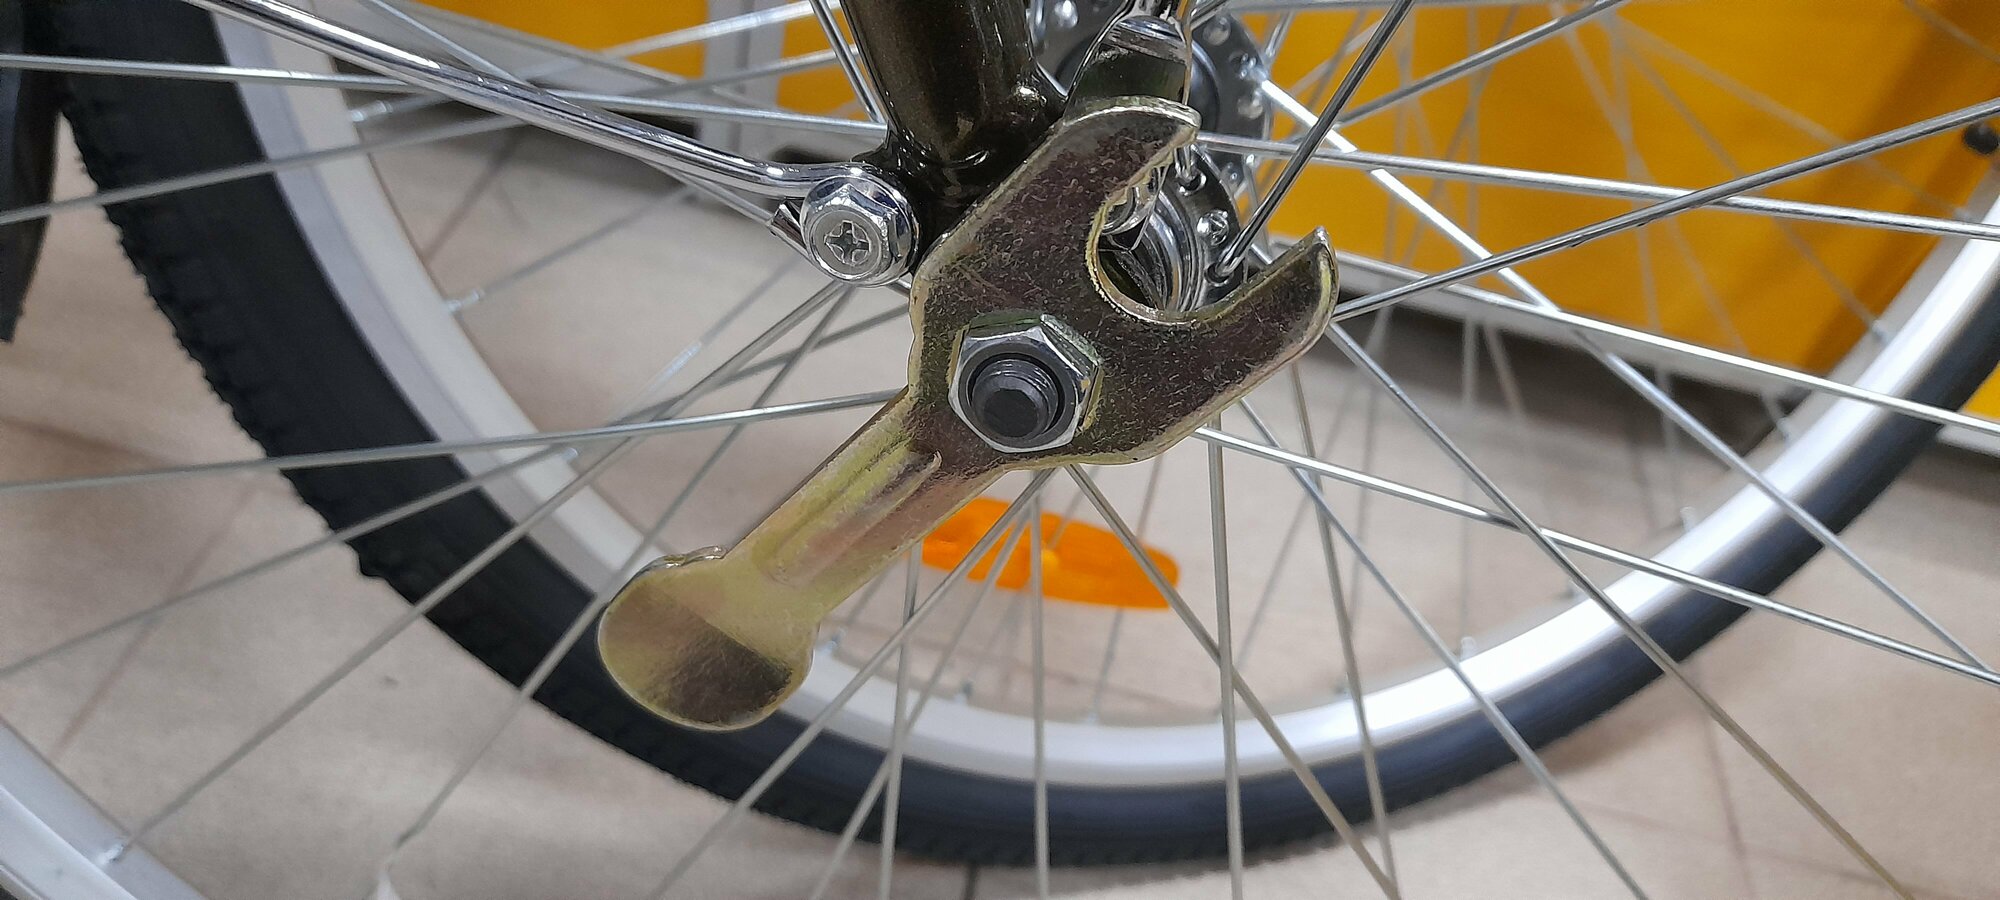 Ключ (комбинированный) велосипеда №15 + монтажка (комплект 2 штуки)